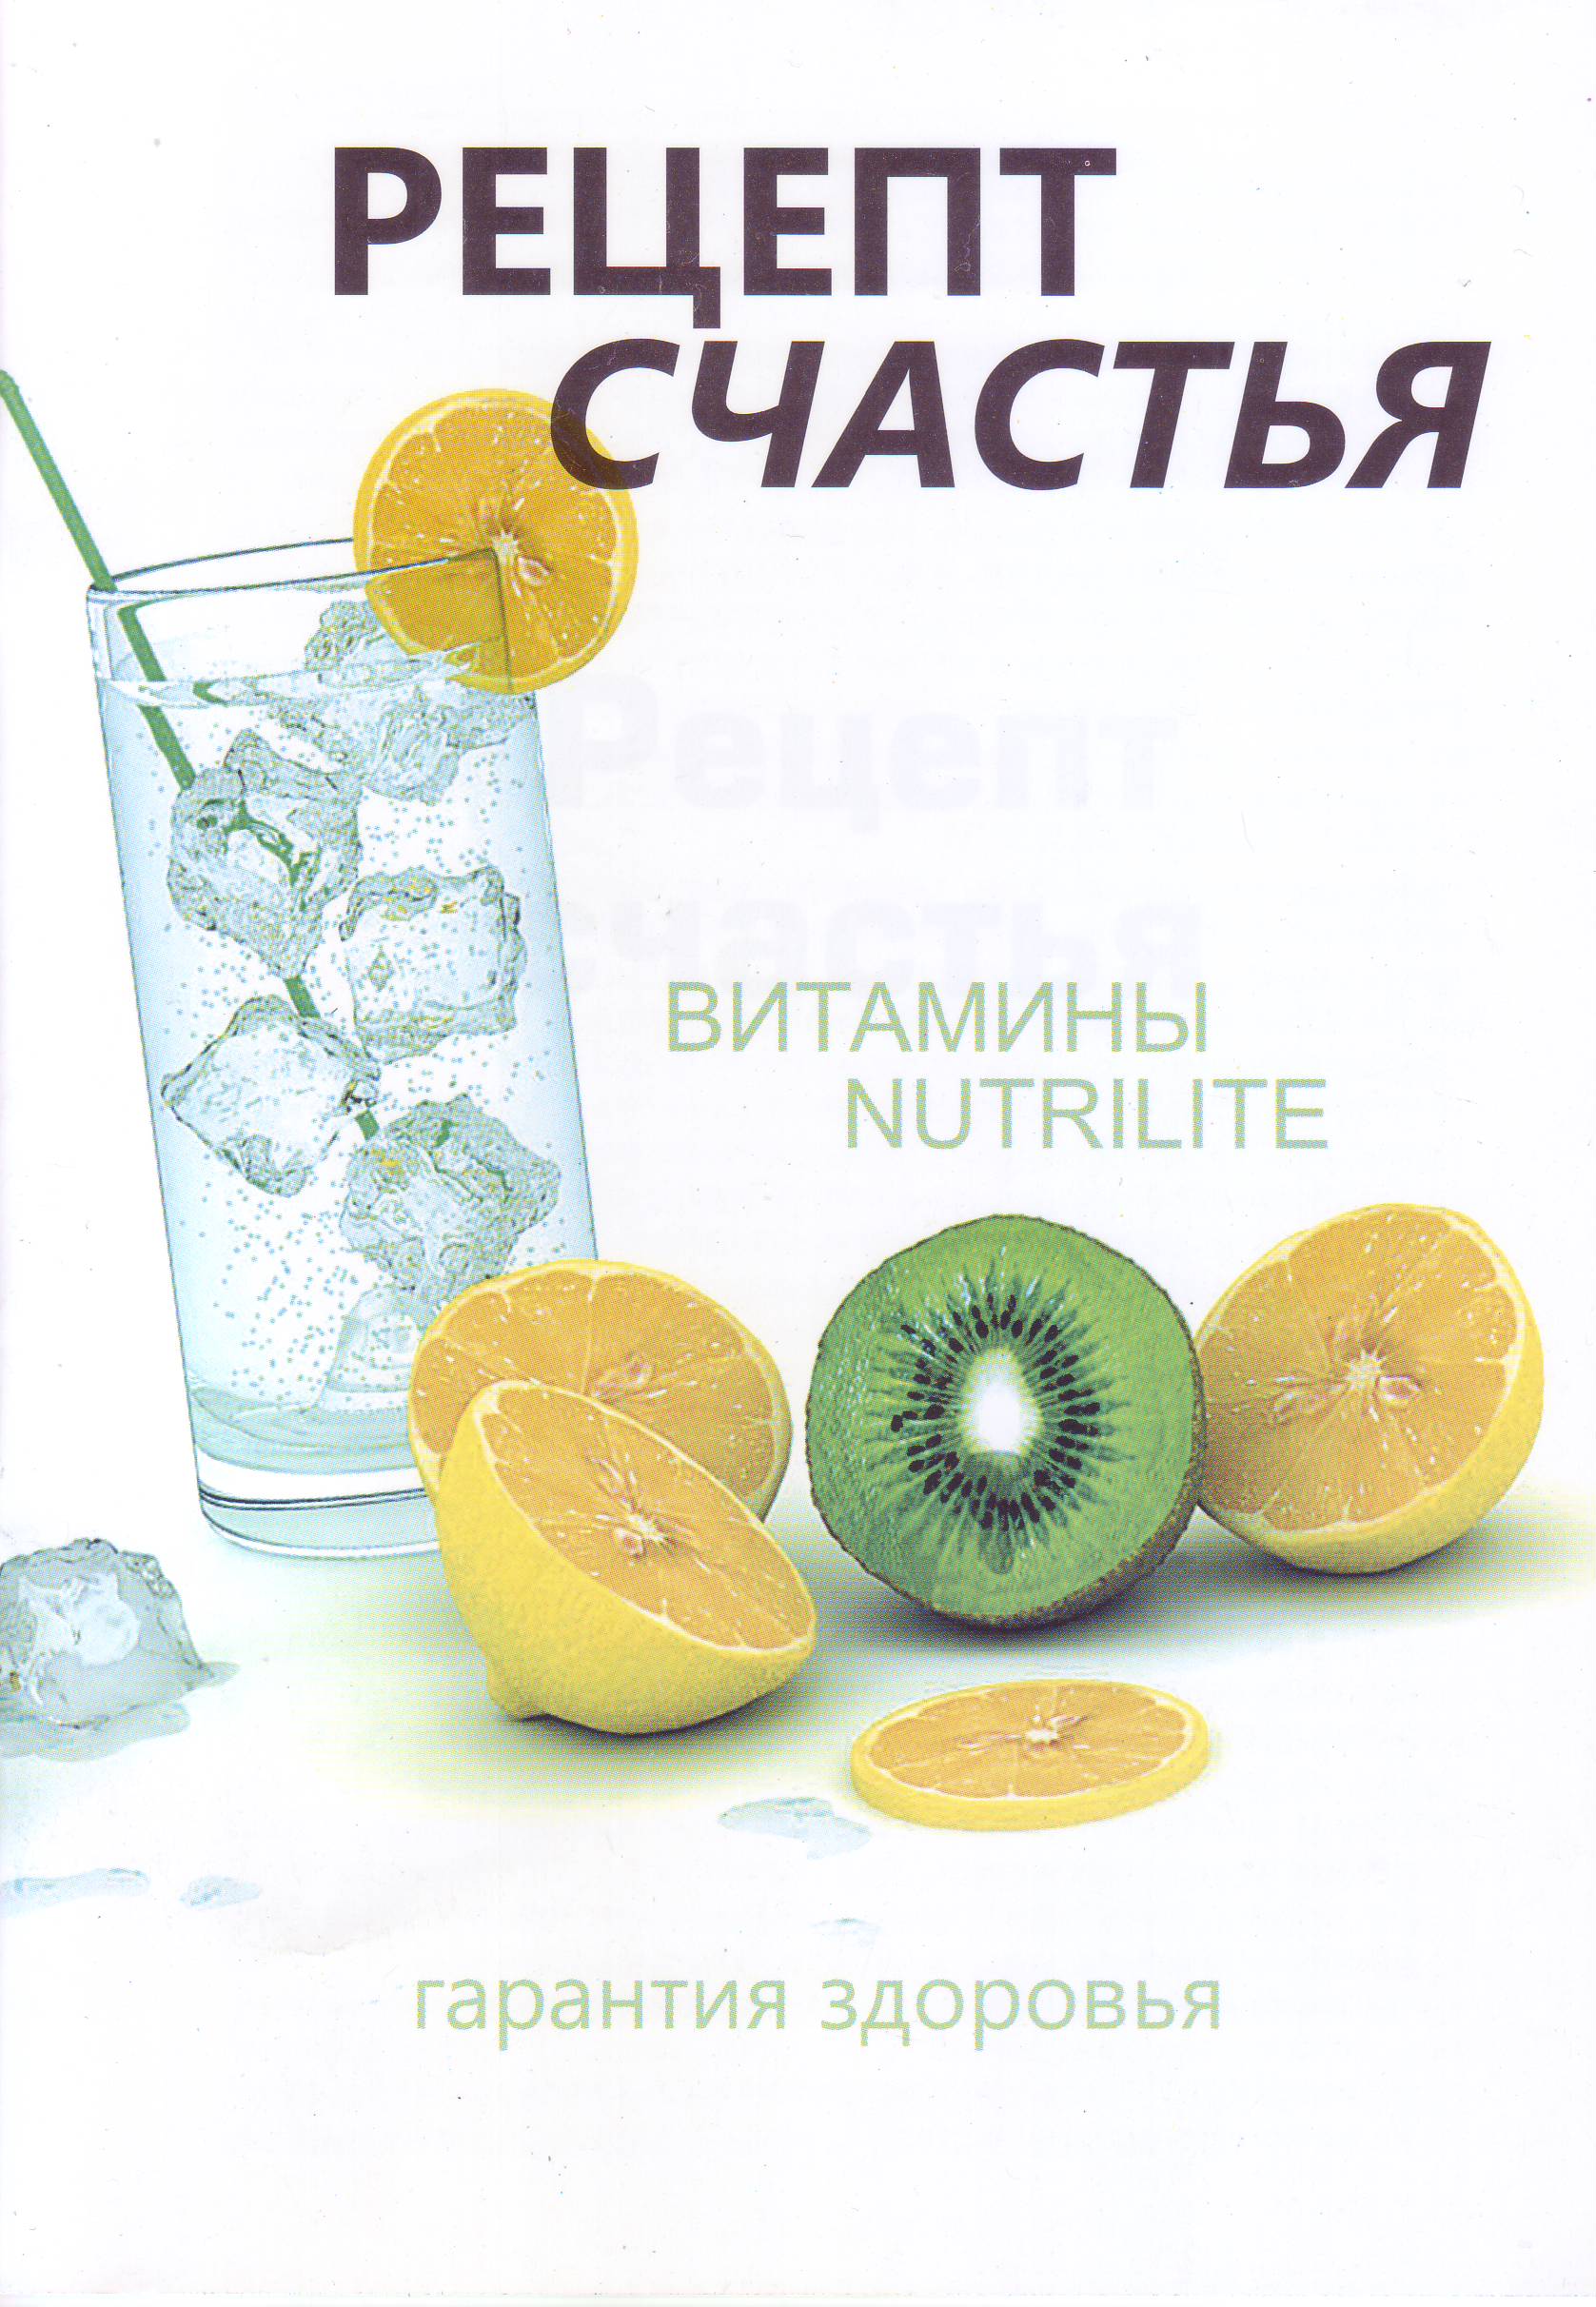 Рецепт счастья - витамины NUTRILITE магазин Biz-book 